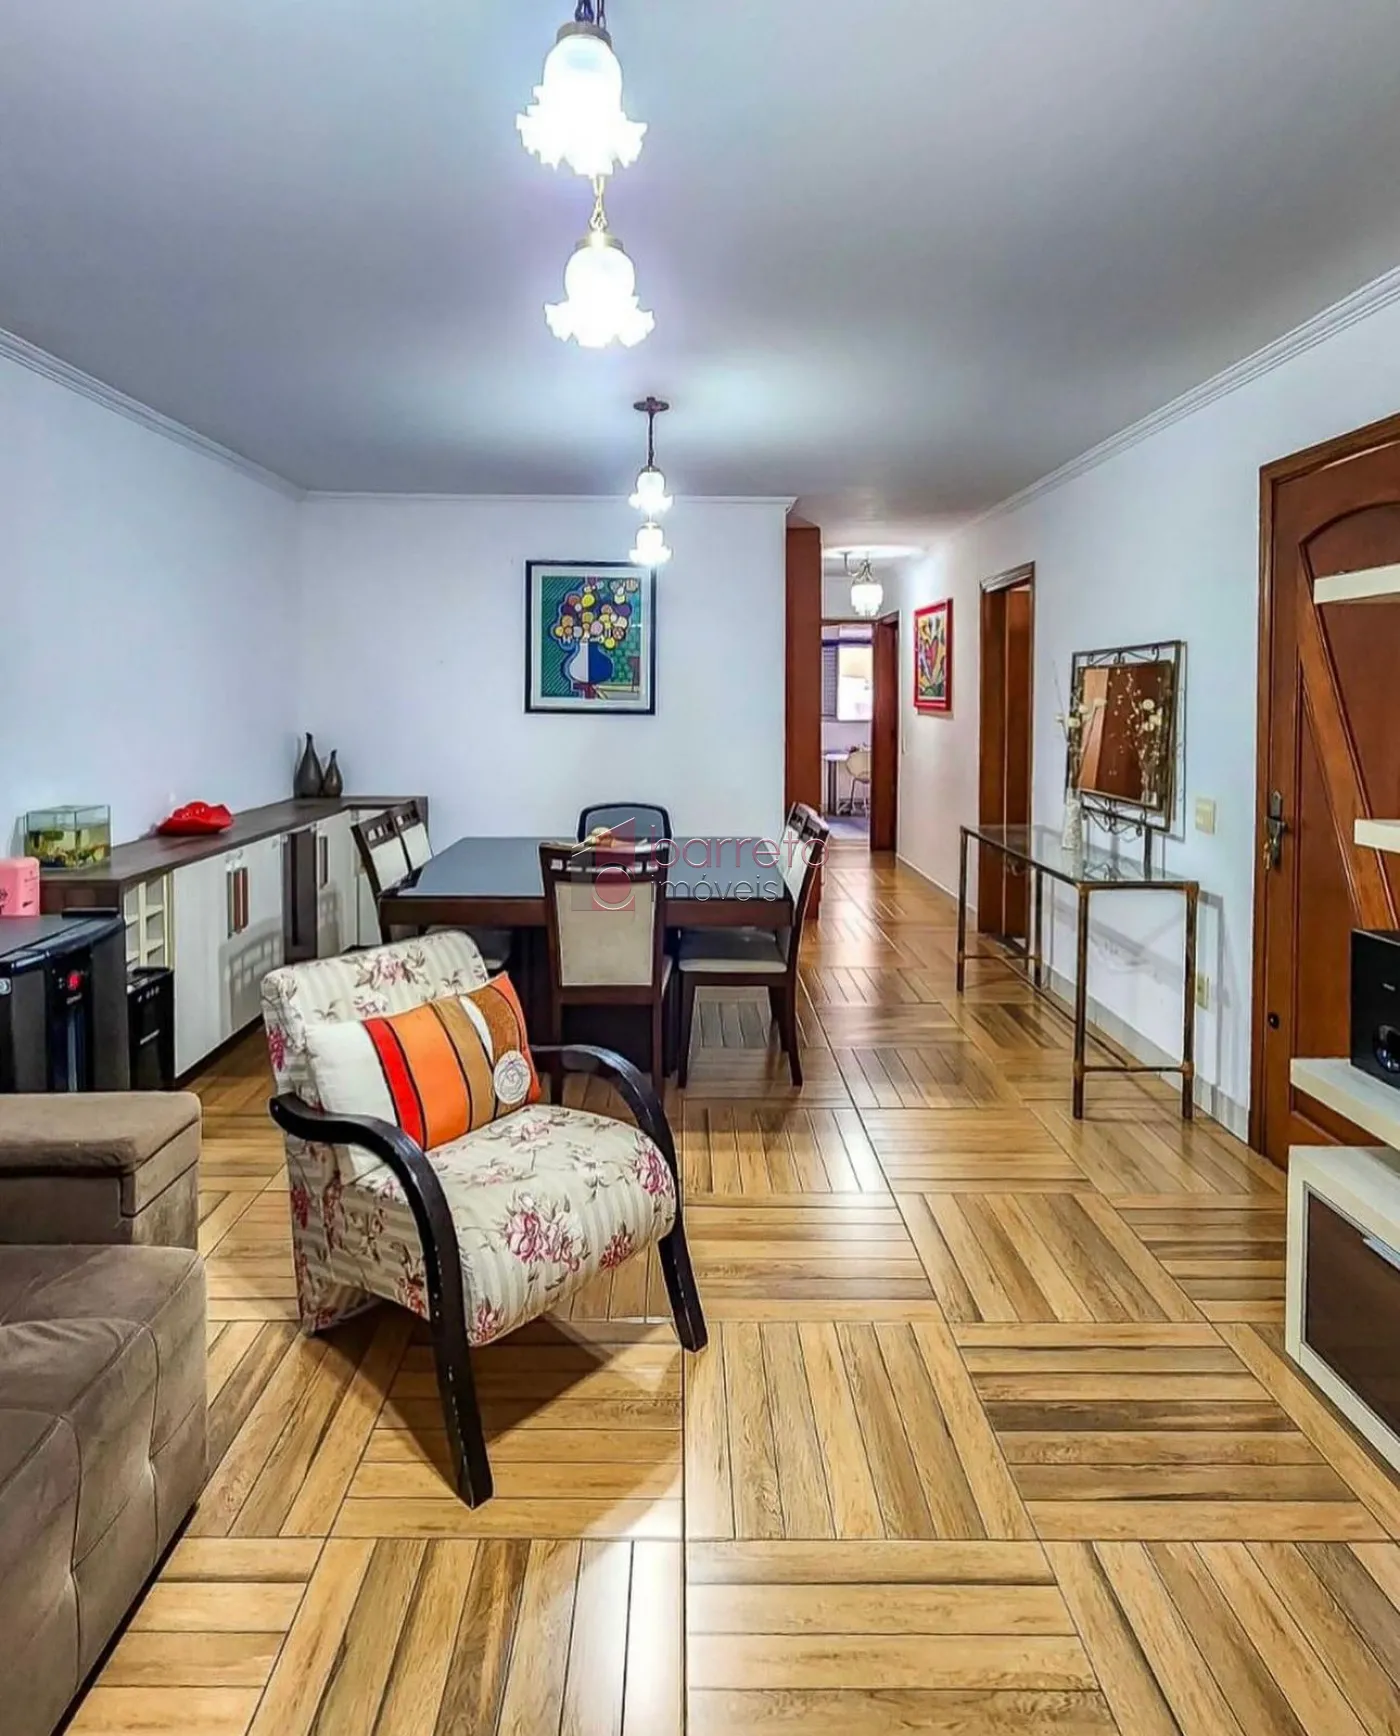 Comprar Casa / Térrea em Jundiaí R$ 830.000,00 - Foto 1